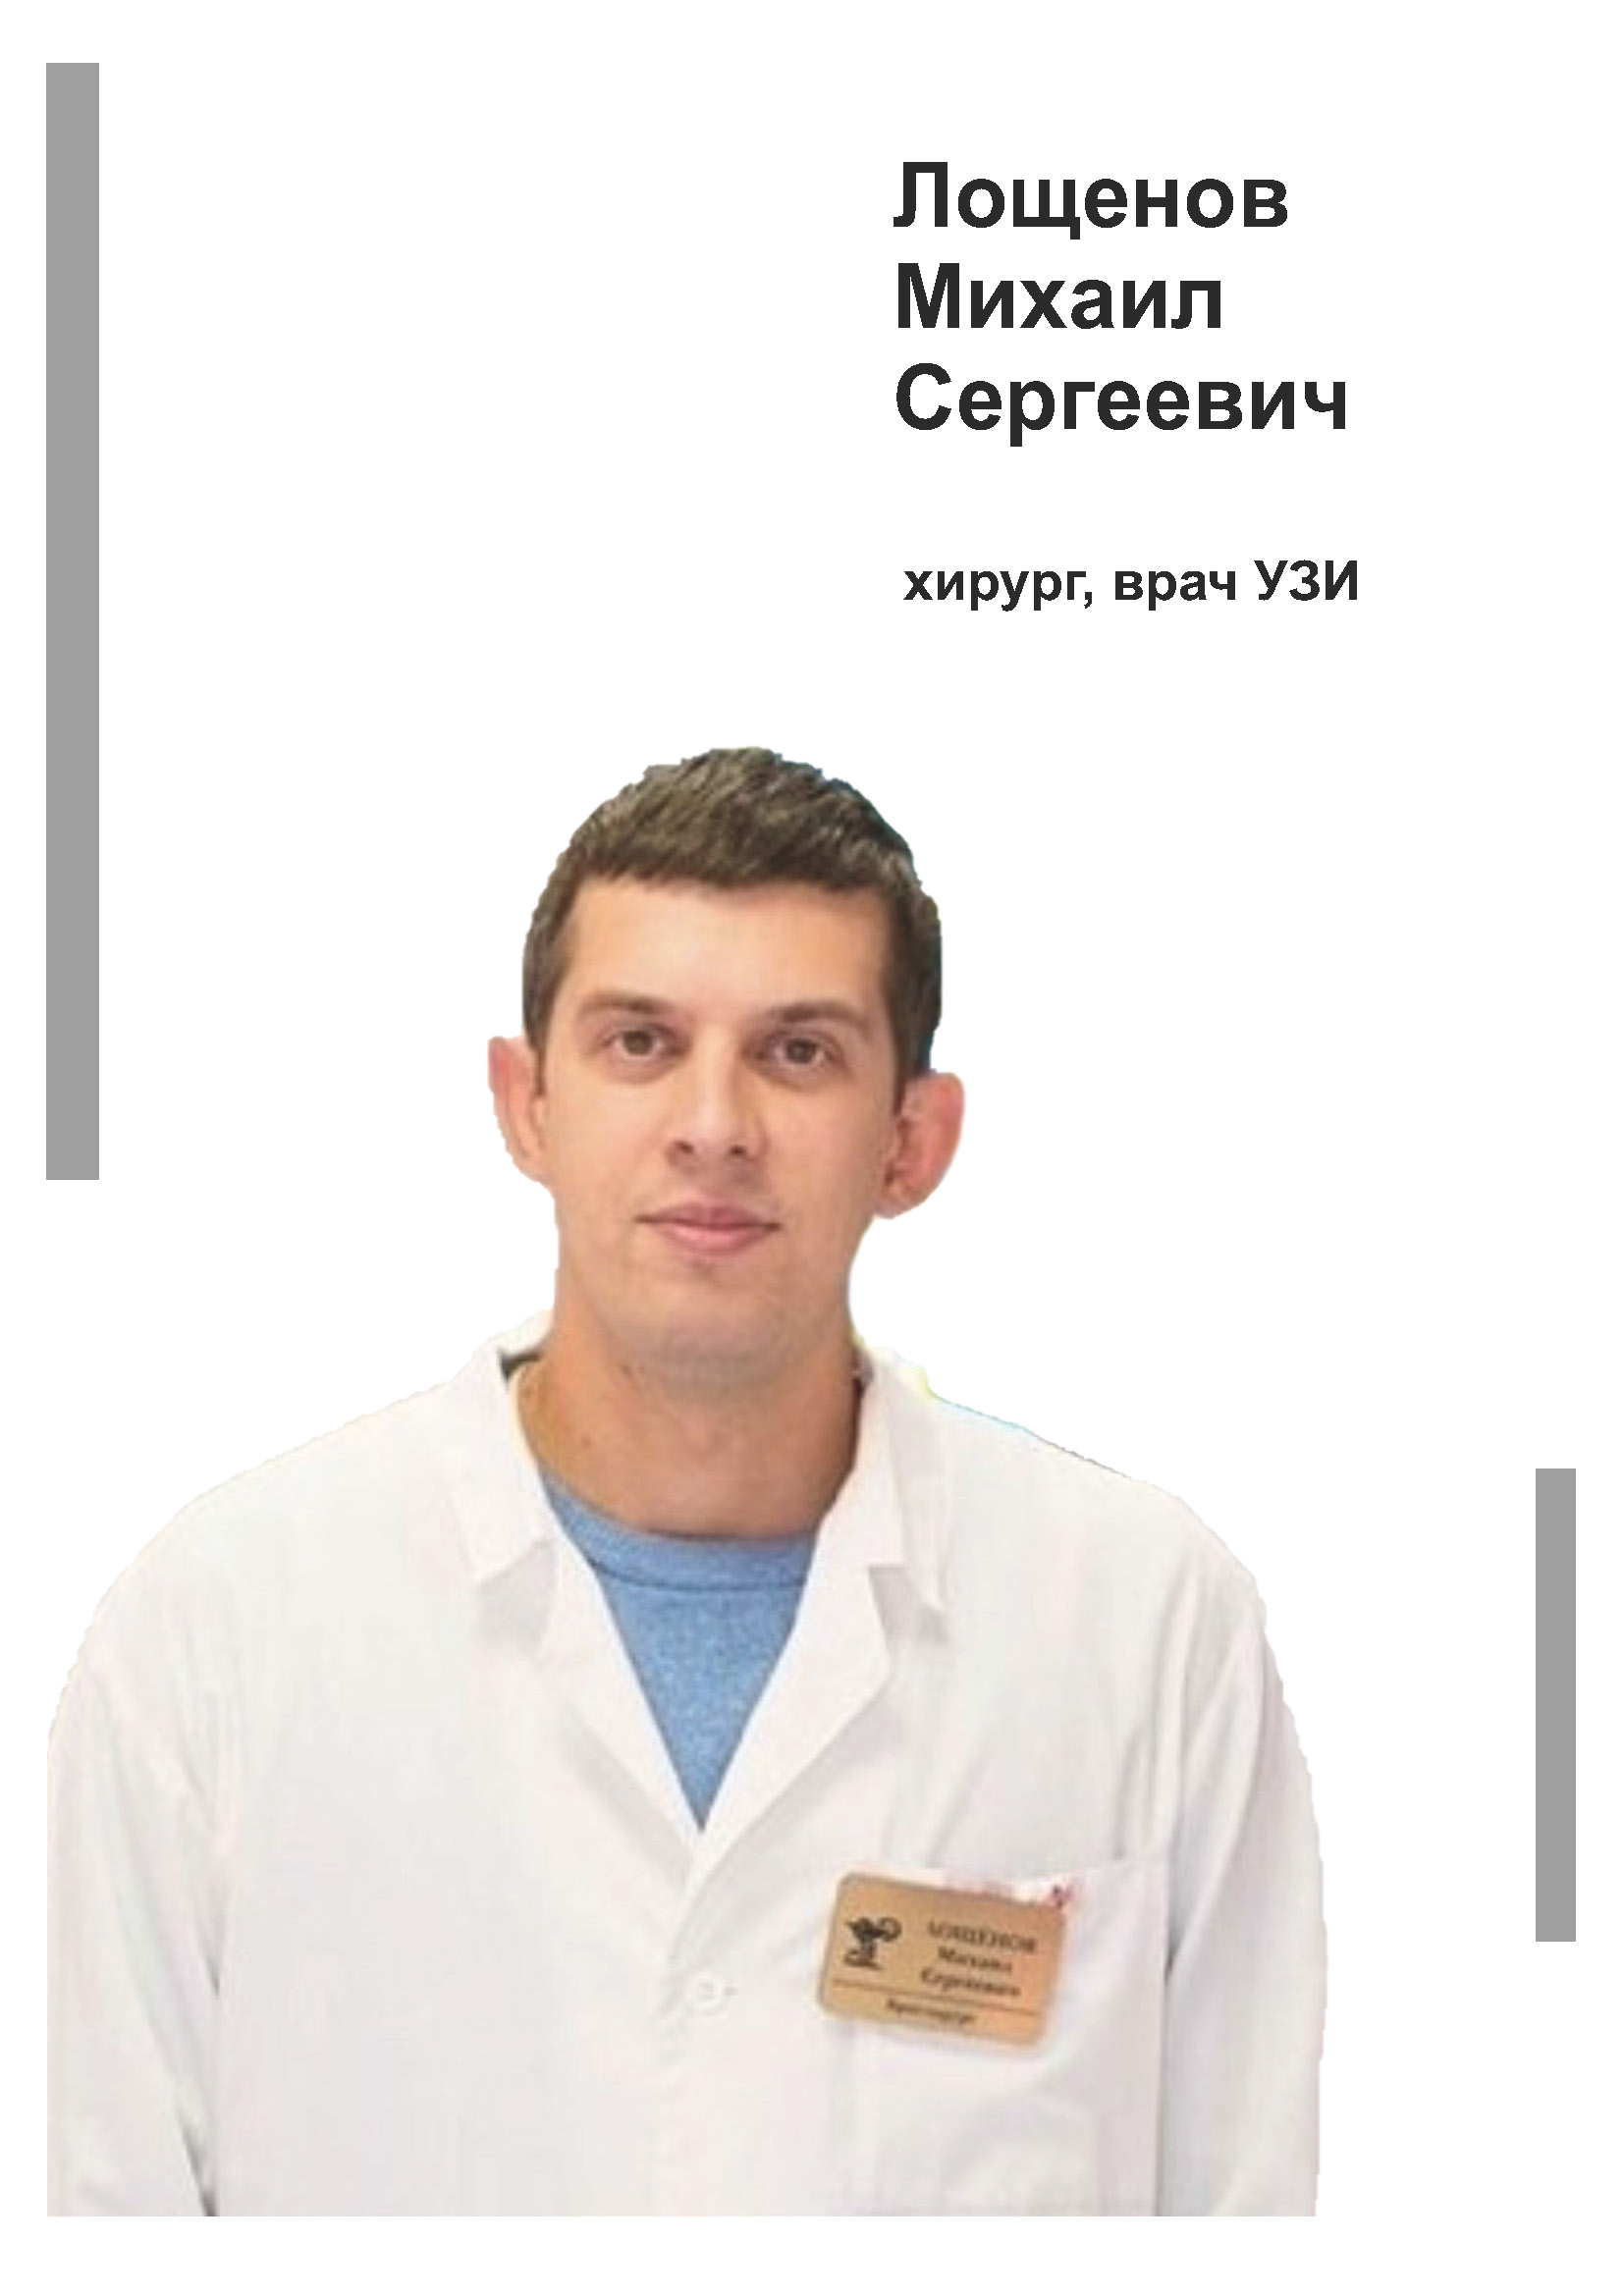 Лощенов Михаил Сергеевич - хирург, врач УЗИ в клинике Lezaffe г. Югорск